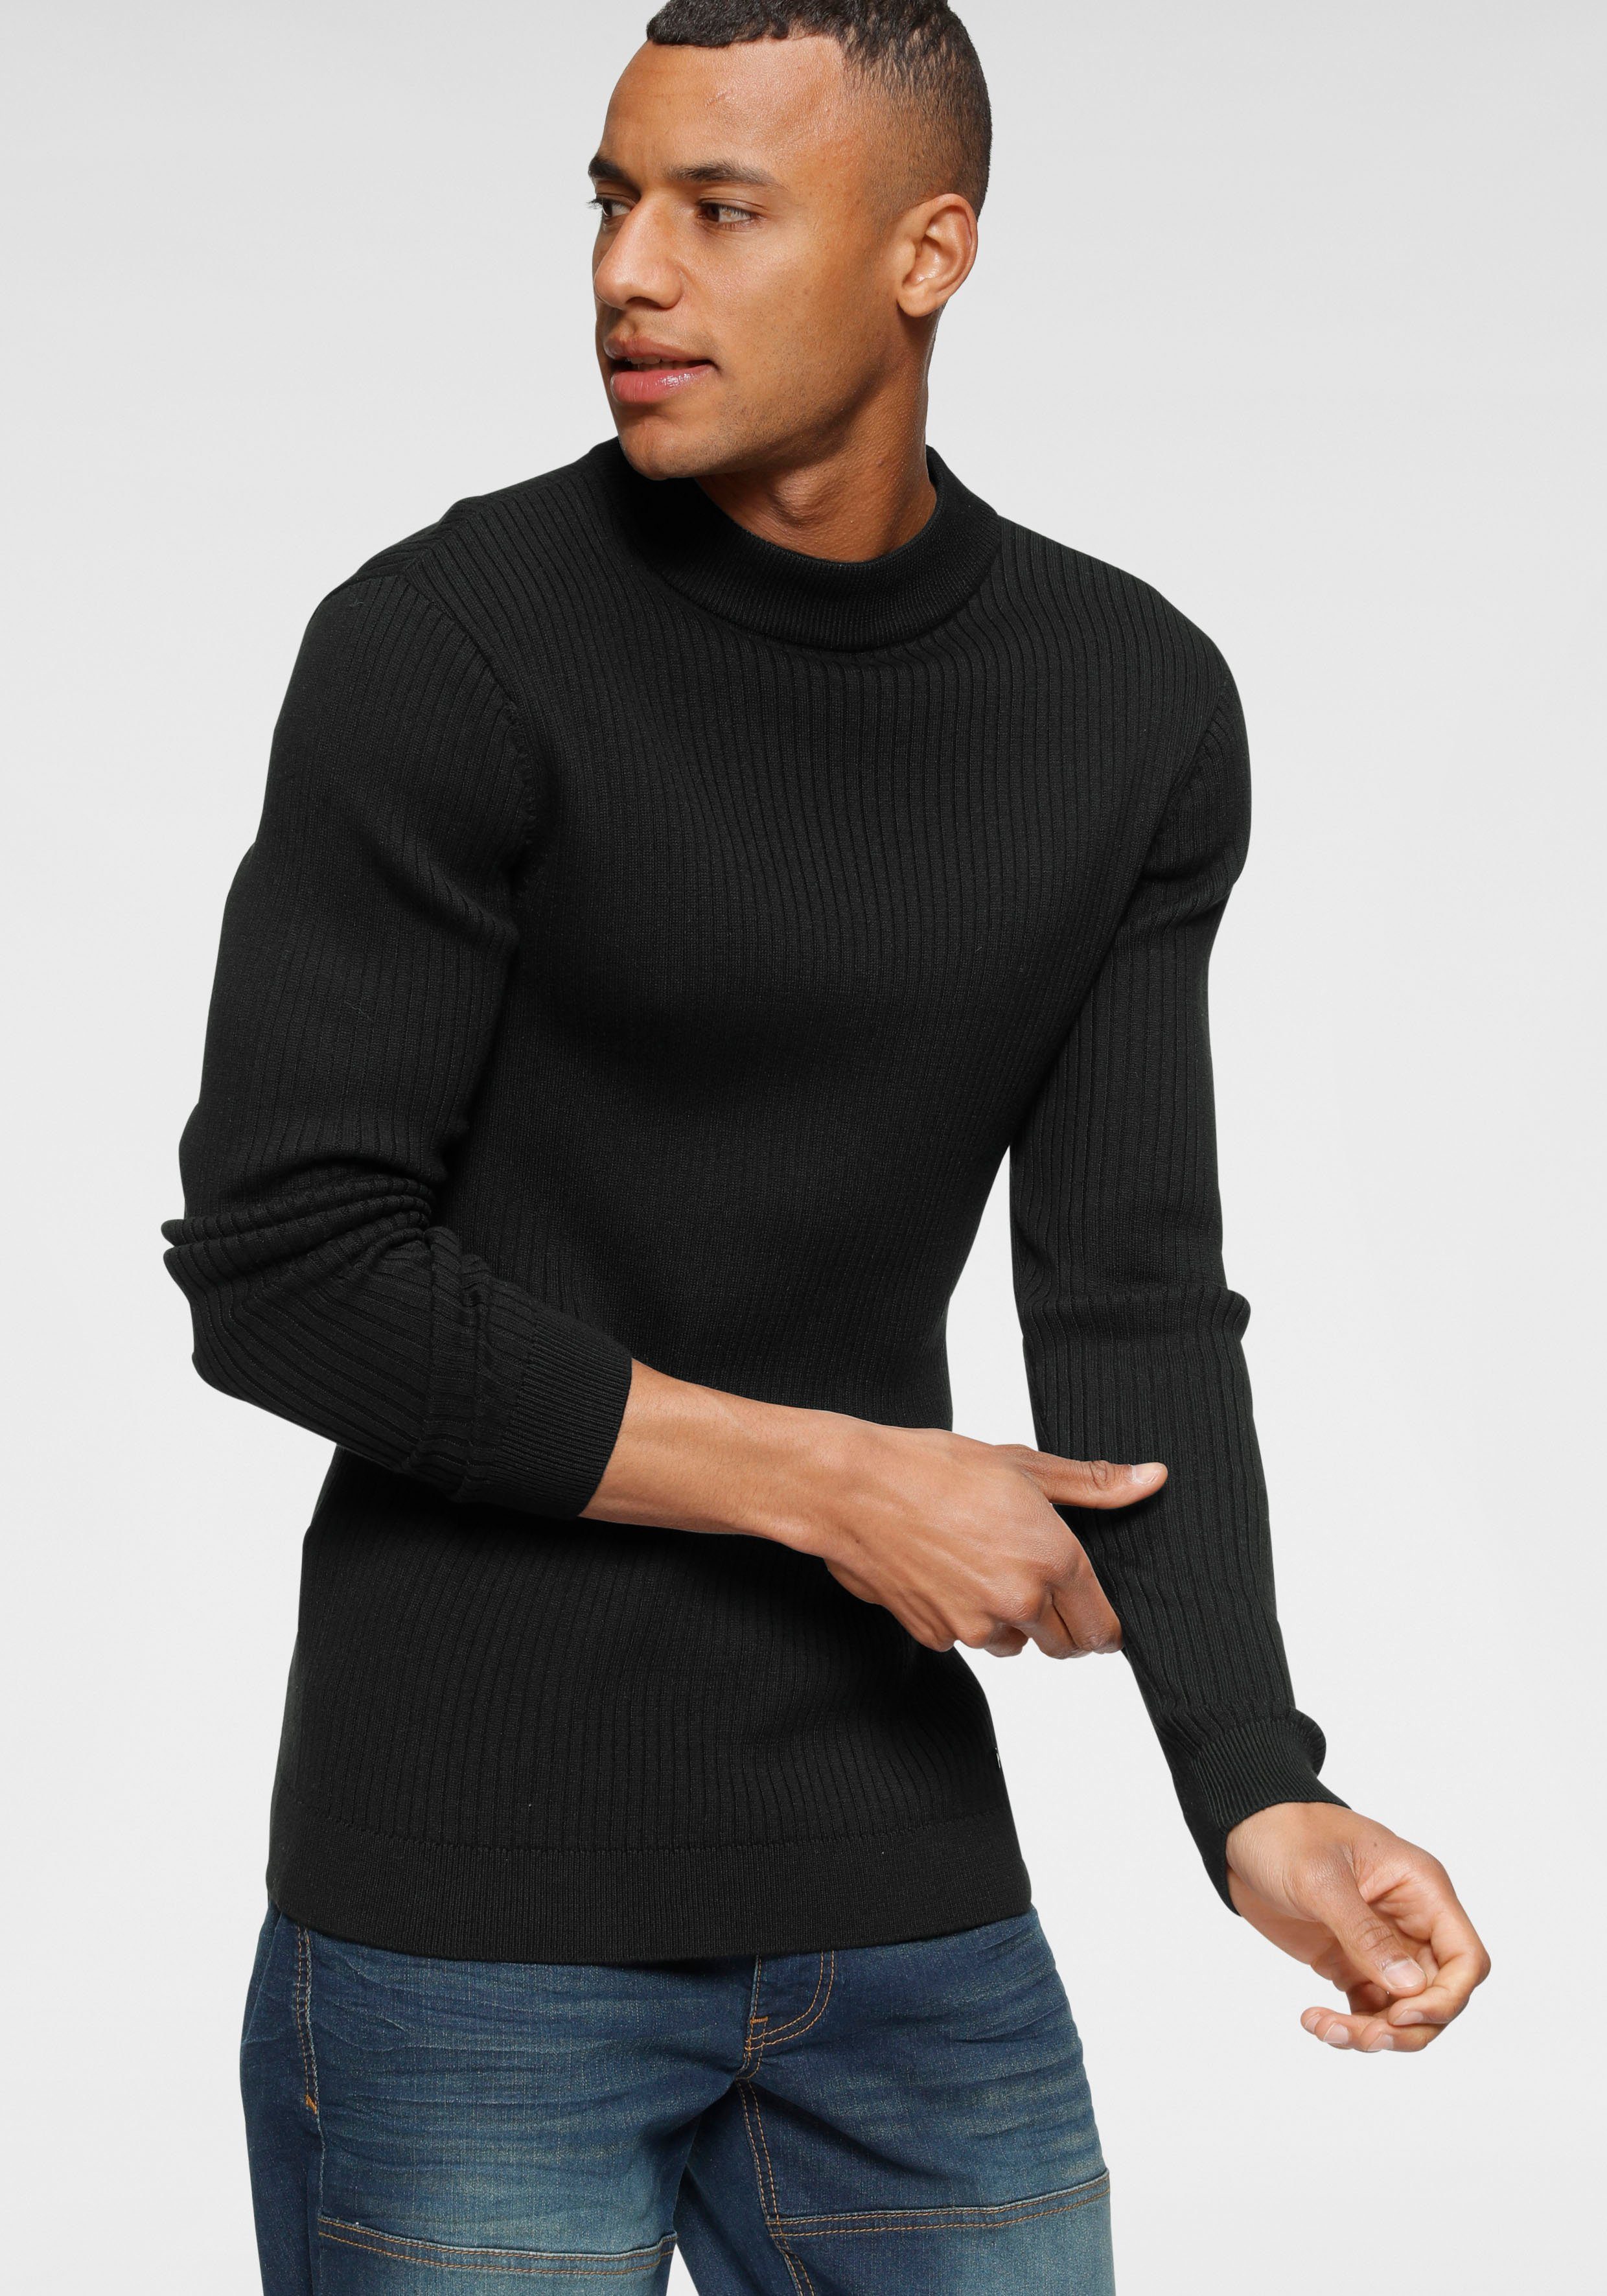 Herren Stehkragen Pullover online kaufen | OTTO